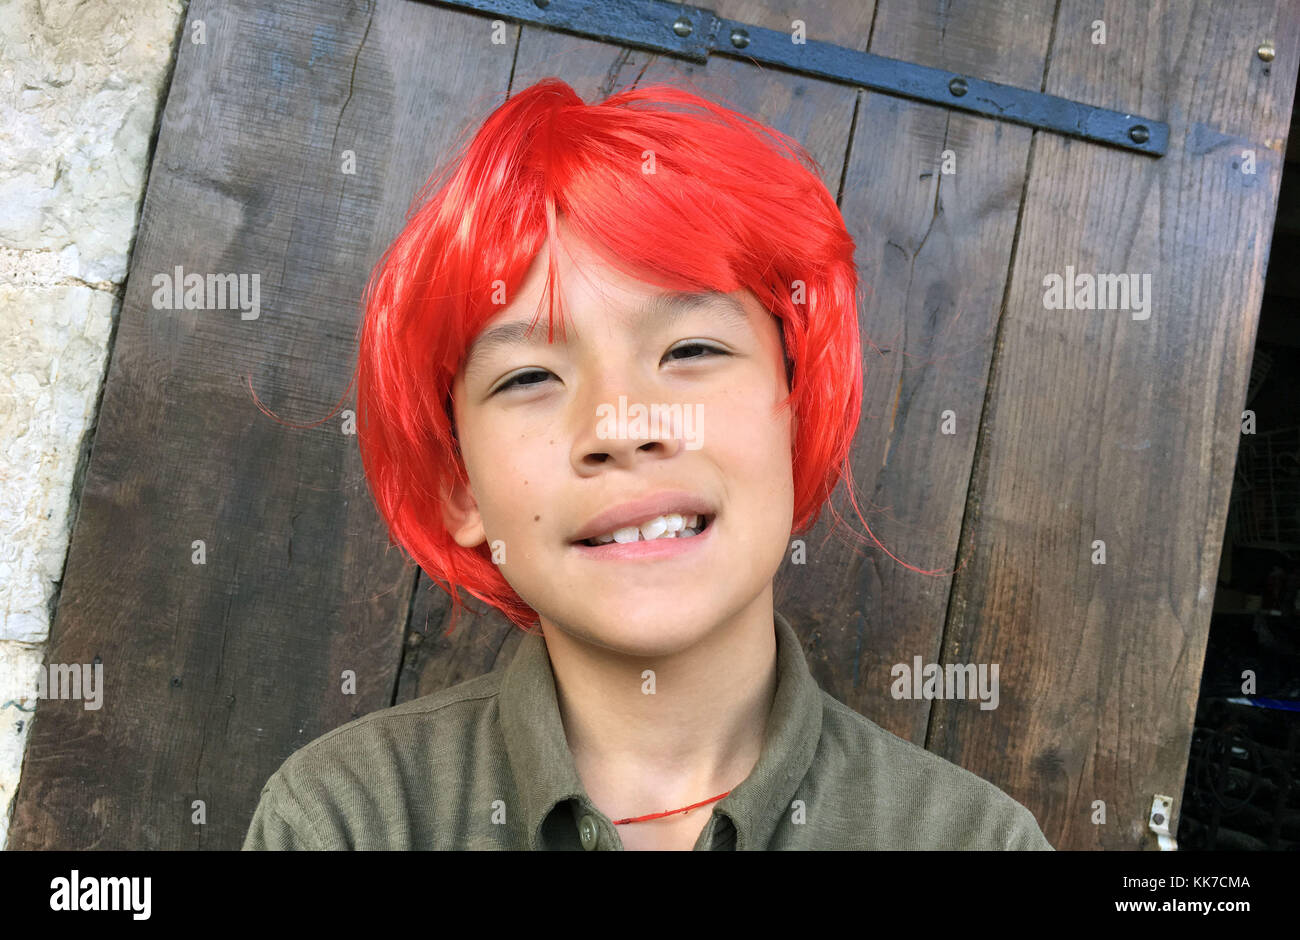 Giovane ragazzo asiatico sorridente con un ritratto rosso parrucca sullo schermo Foto Stock